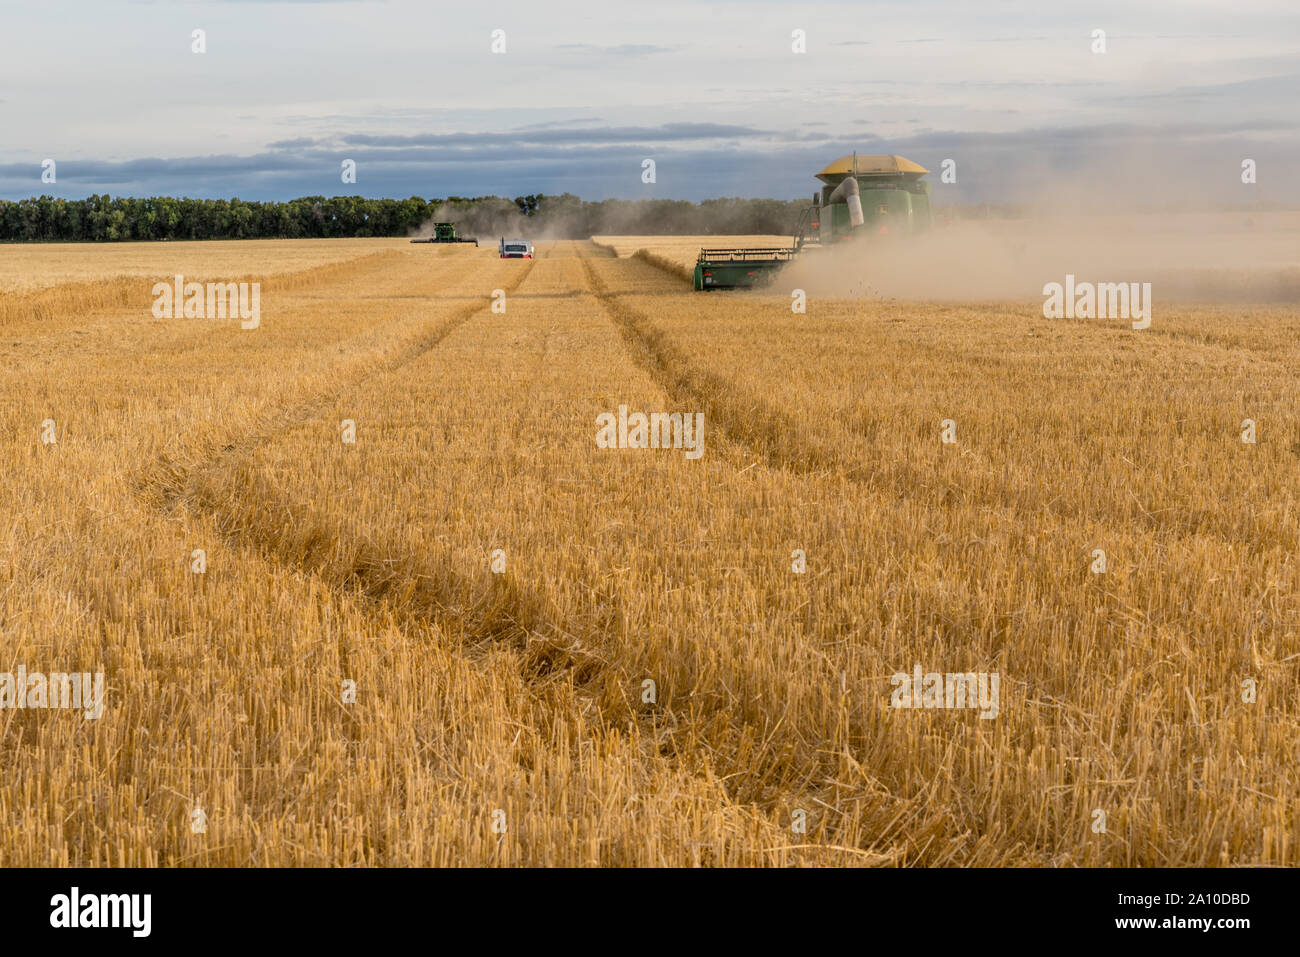 Corrente di Swift, SK, Canada- Settembre 8, 2019: due mietitrebbia e un carrello granella il raccolto di un campo di grano su praterie in Saskatchewan, Canada Foto Stock